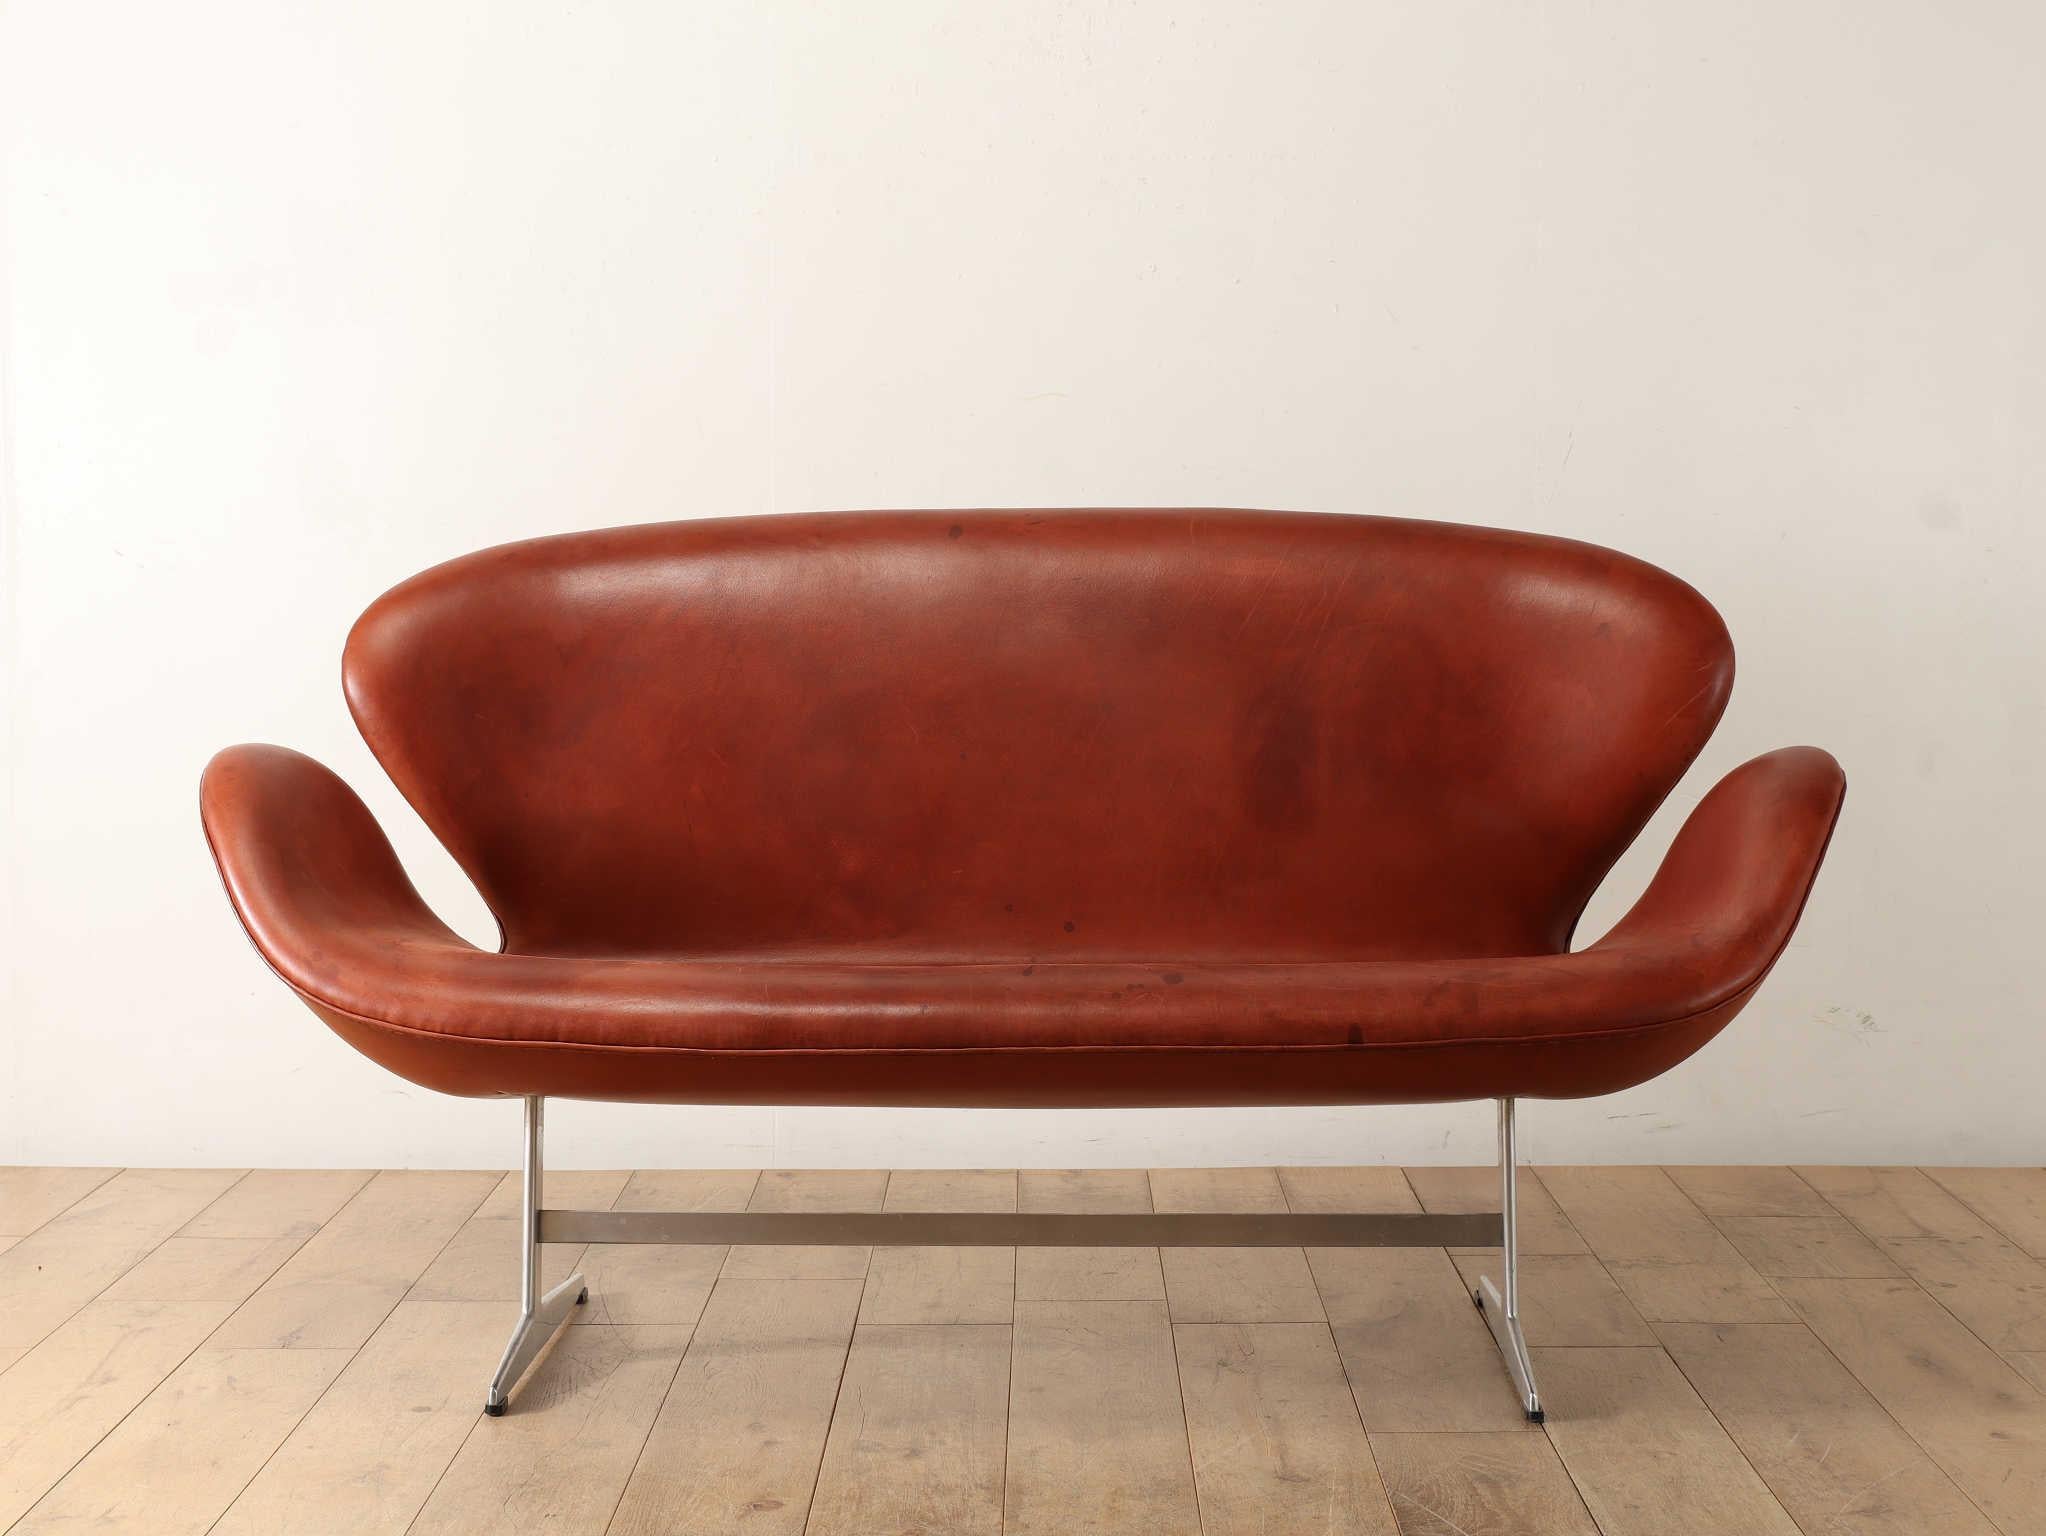 Modell FH3321 Schwanensofa von Fritz Hansen, entworfen von Arne Jacobsen für das SAS Royal Hotel in Kopenhagen im Jahr 1958.
Das innovative Design und die Form, die nur aus Linien besteht, vermitteln einen organischen und weichen Eindruck. Das Sofa